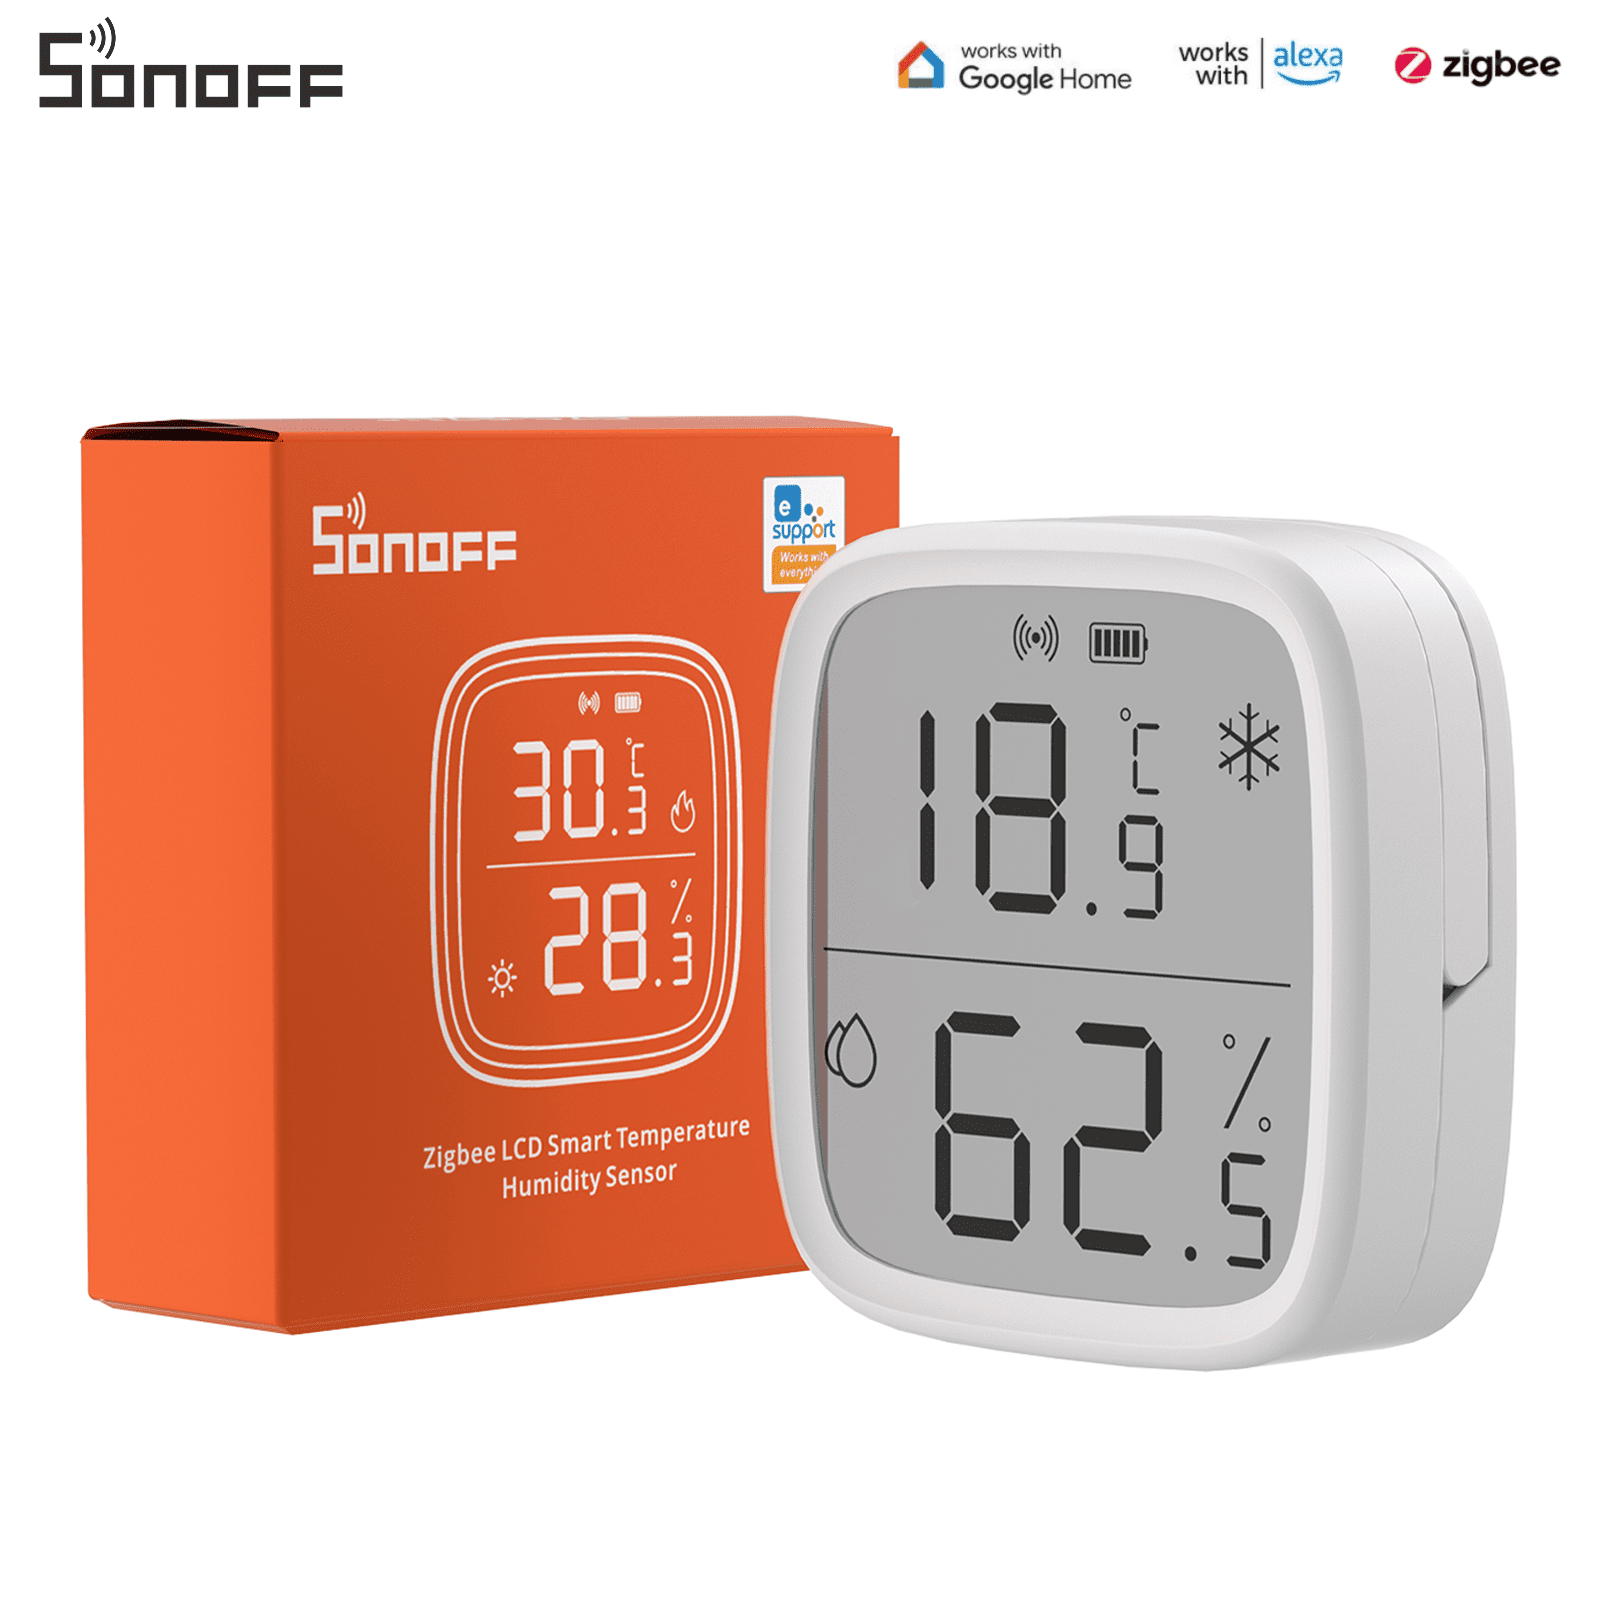 SONOFF Zigbee Smart Indoor Temperature Humidity Sensor,Zigbee Hygrometer  Thermometer Works with Alexa Google Home Smartthings IFTTT 